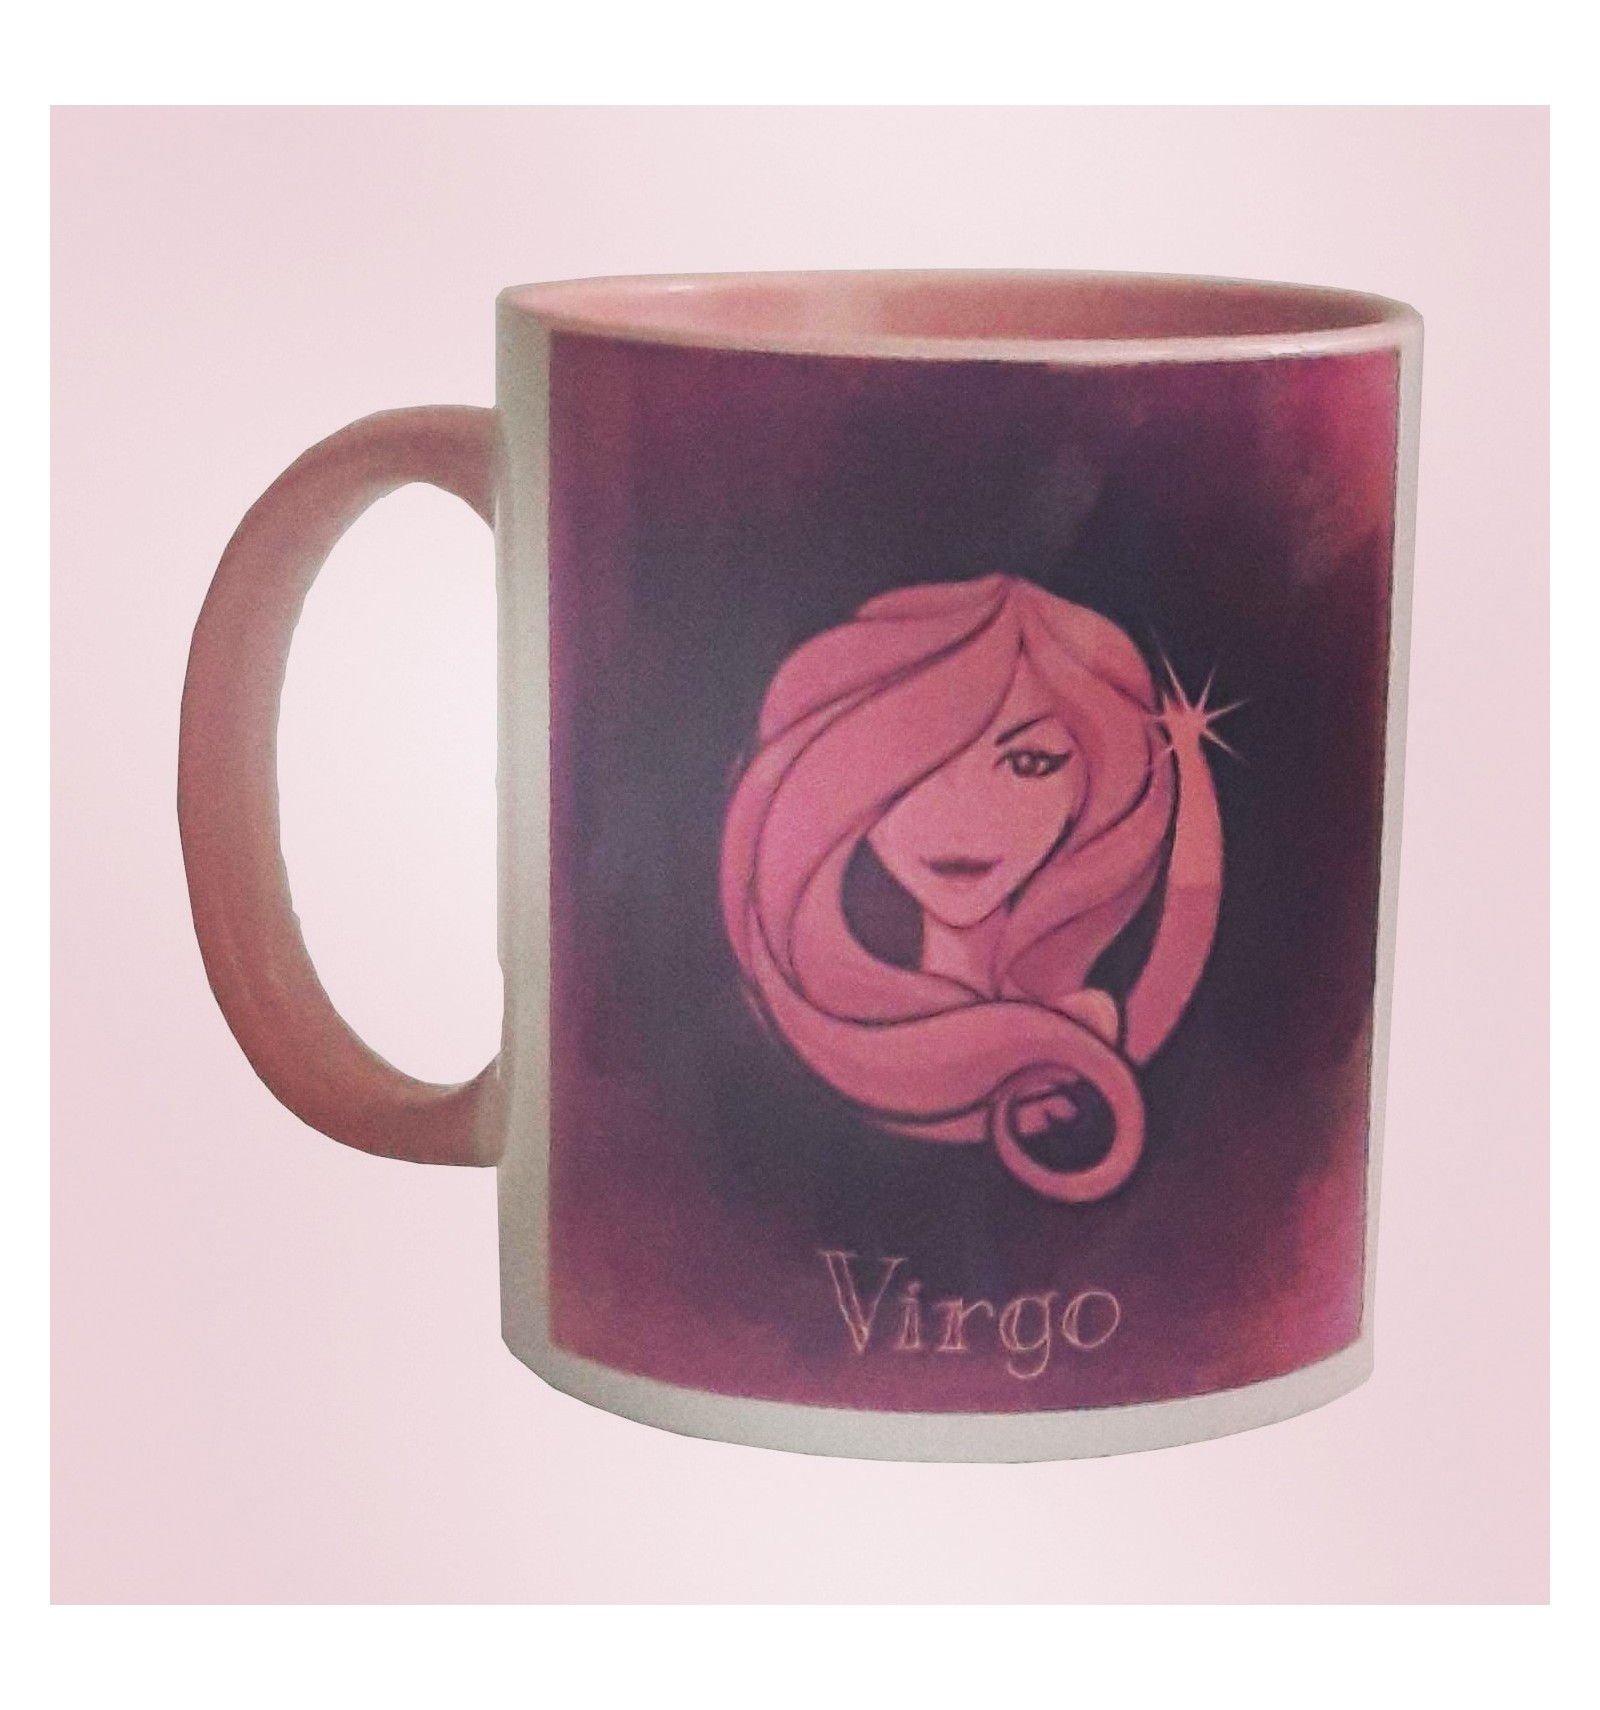 Grande tasse avec sa cuillère assortie de couleur rose - Mug personnalisable  (prénom, message, etc.) - Objet de décoration ou oeuvre artisanale sur